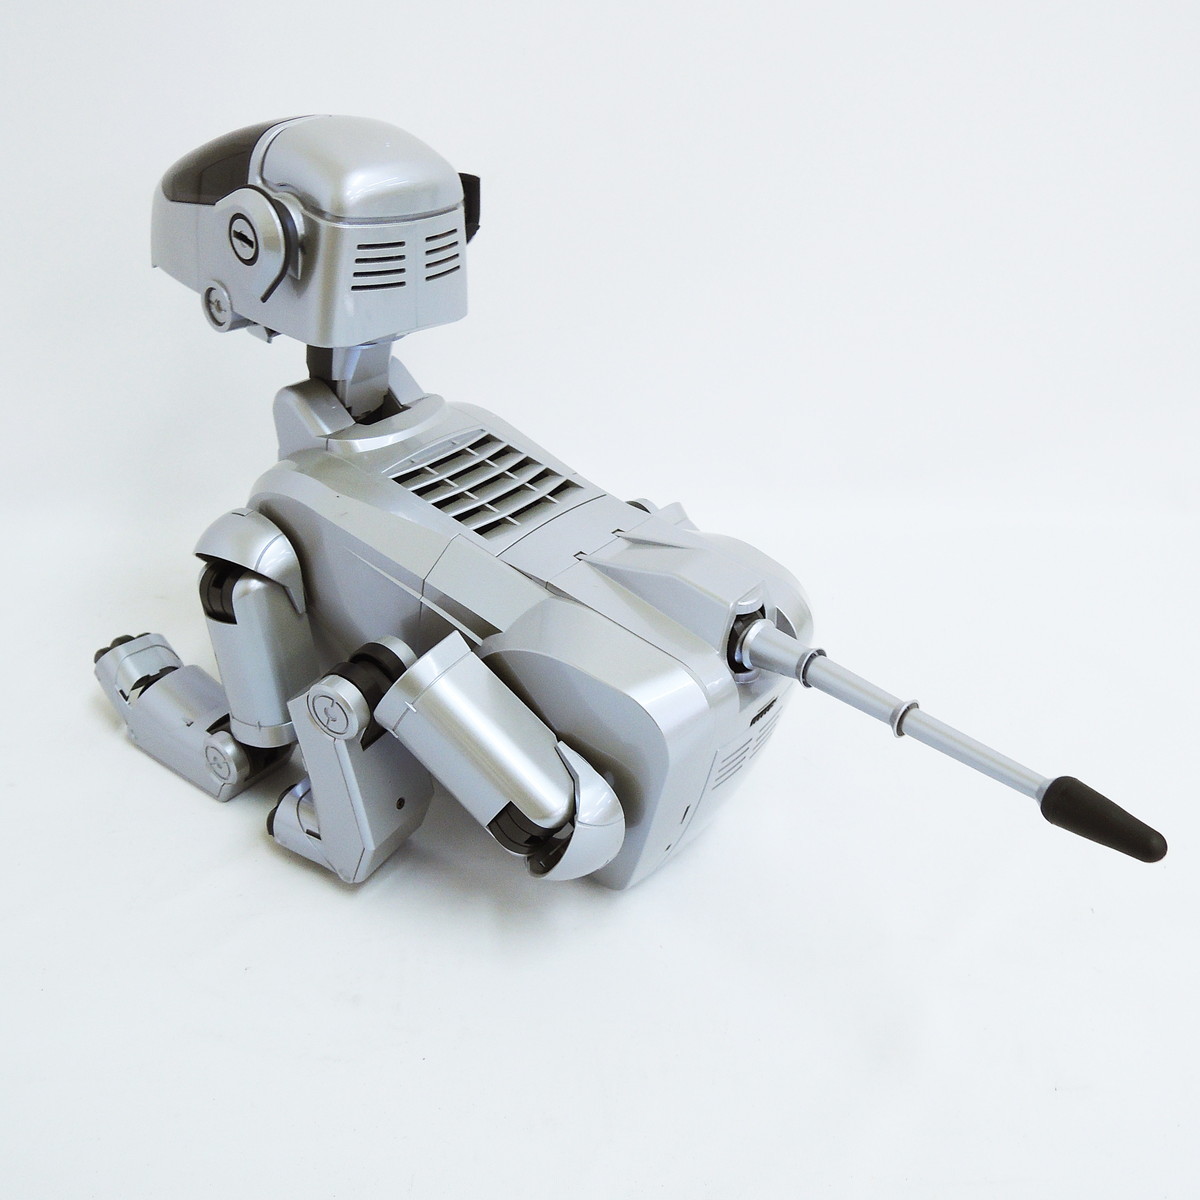 新品未使用品 ソニー ERS-111 アイボ エンターテイメントロボット ware ver1.1 ERA-111M SONY AIBO ENTERTAINMENT ROBOT_画像5